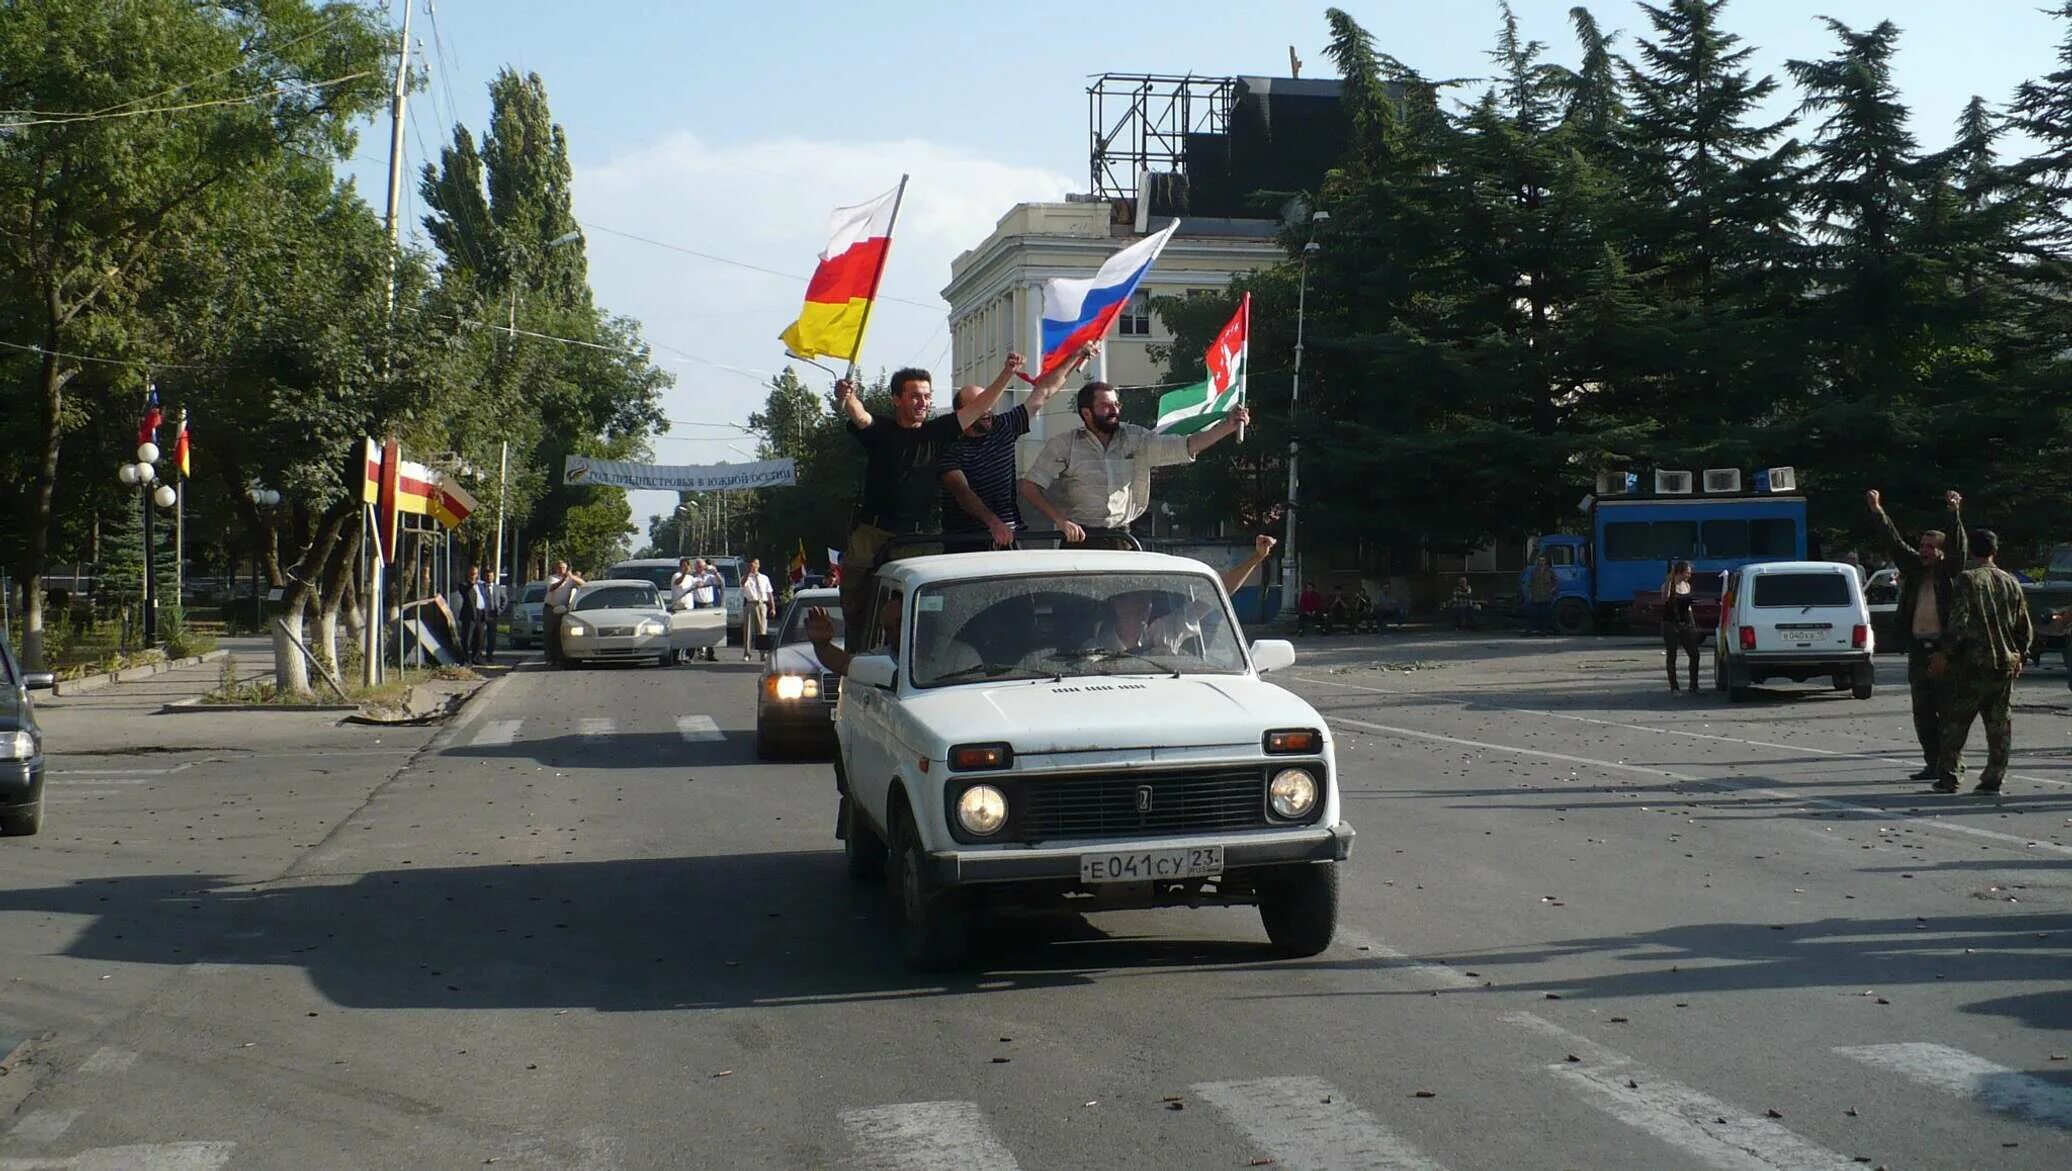 Южная осетия хочет. Независимость Абхазии и Южной Осетии 2008. Цхинвал август 2008. 26 Августа 2008 признание Россией независимости Южной Осетии и Абхазии.